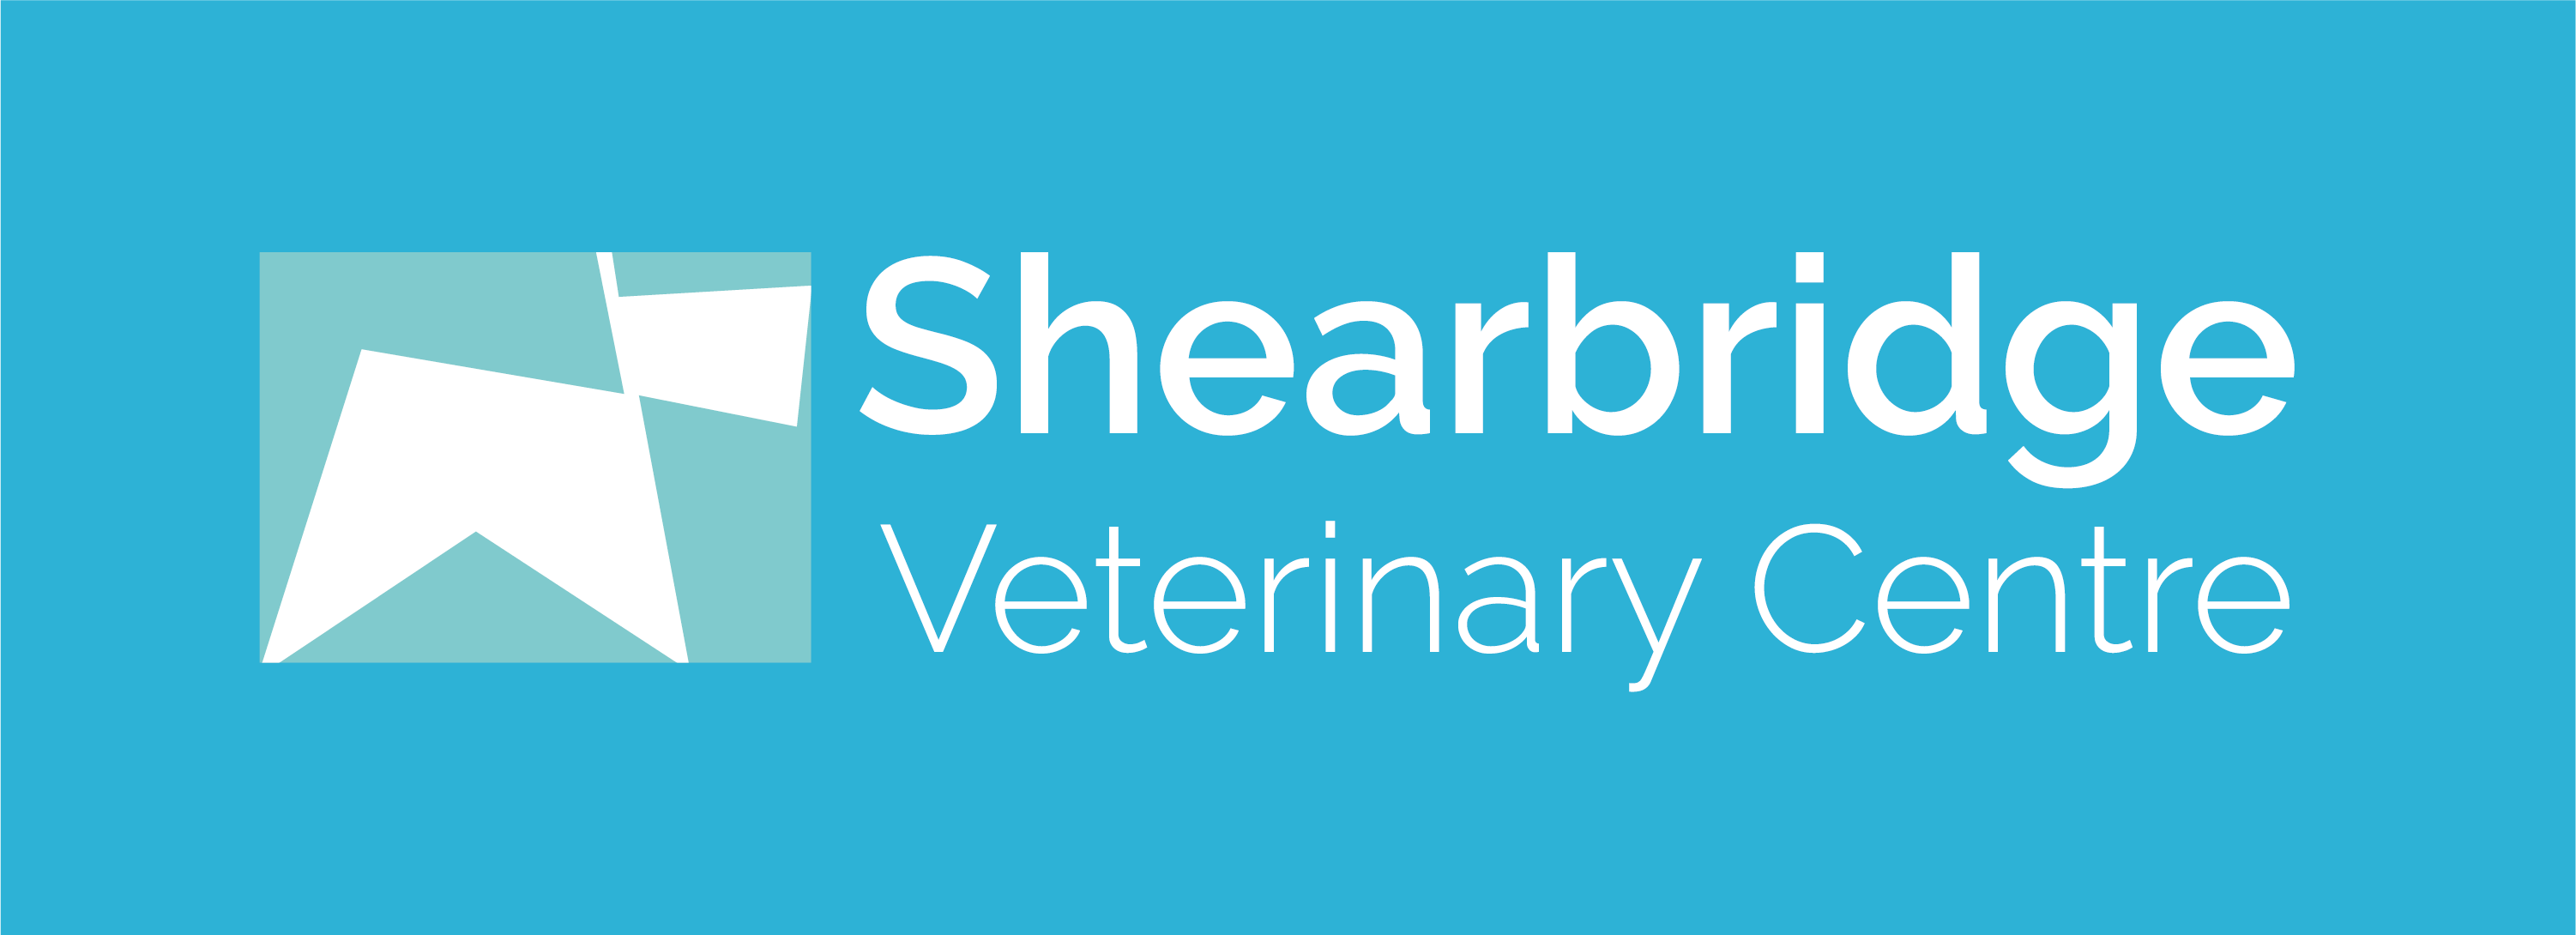 Shearbridge Veterinary Centre